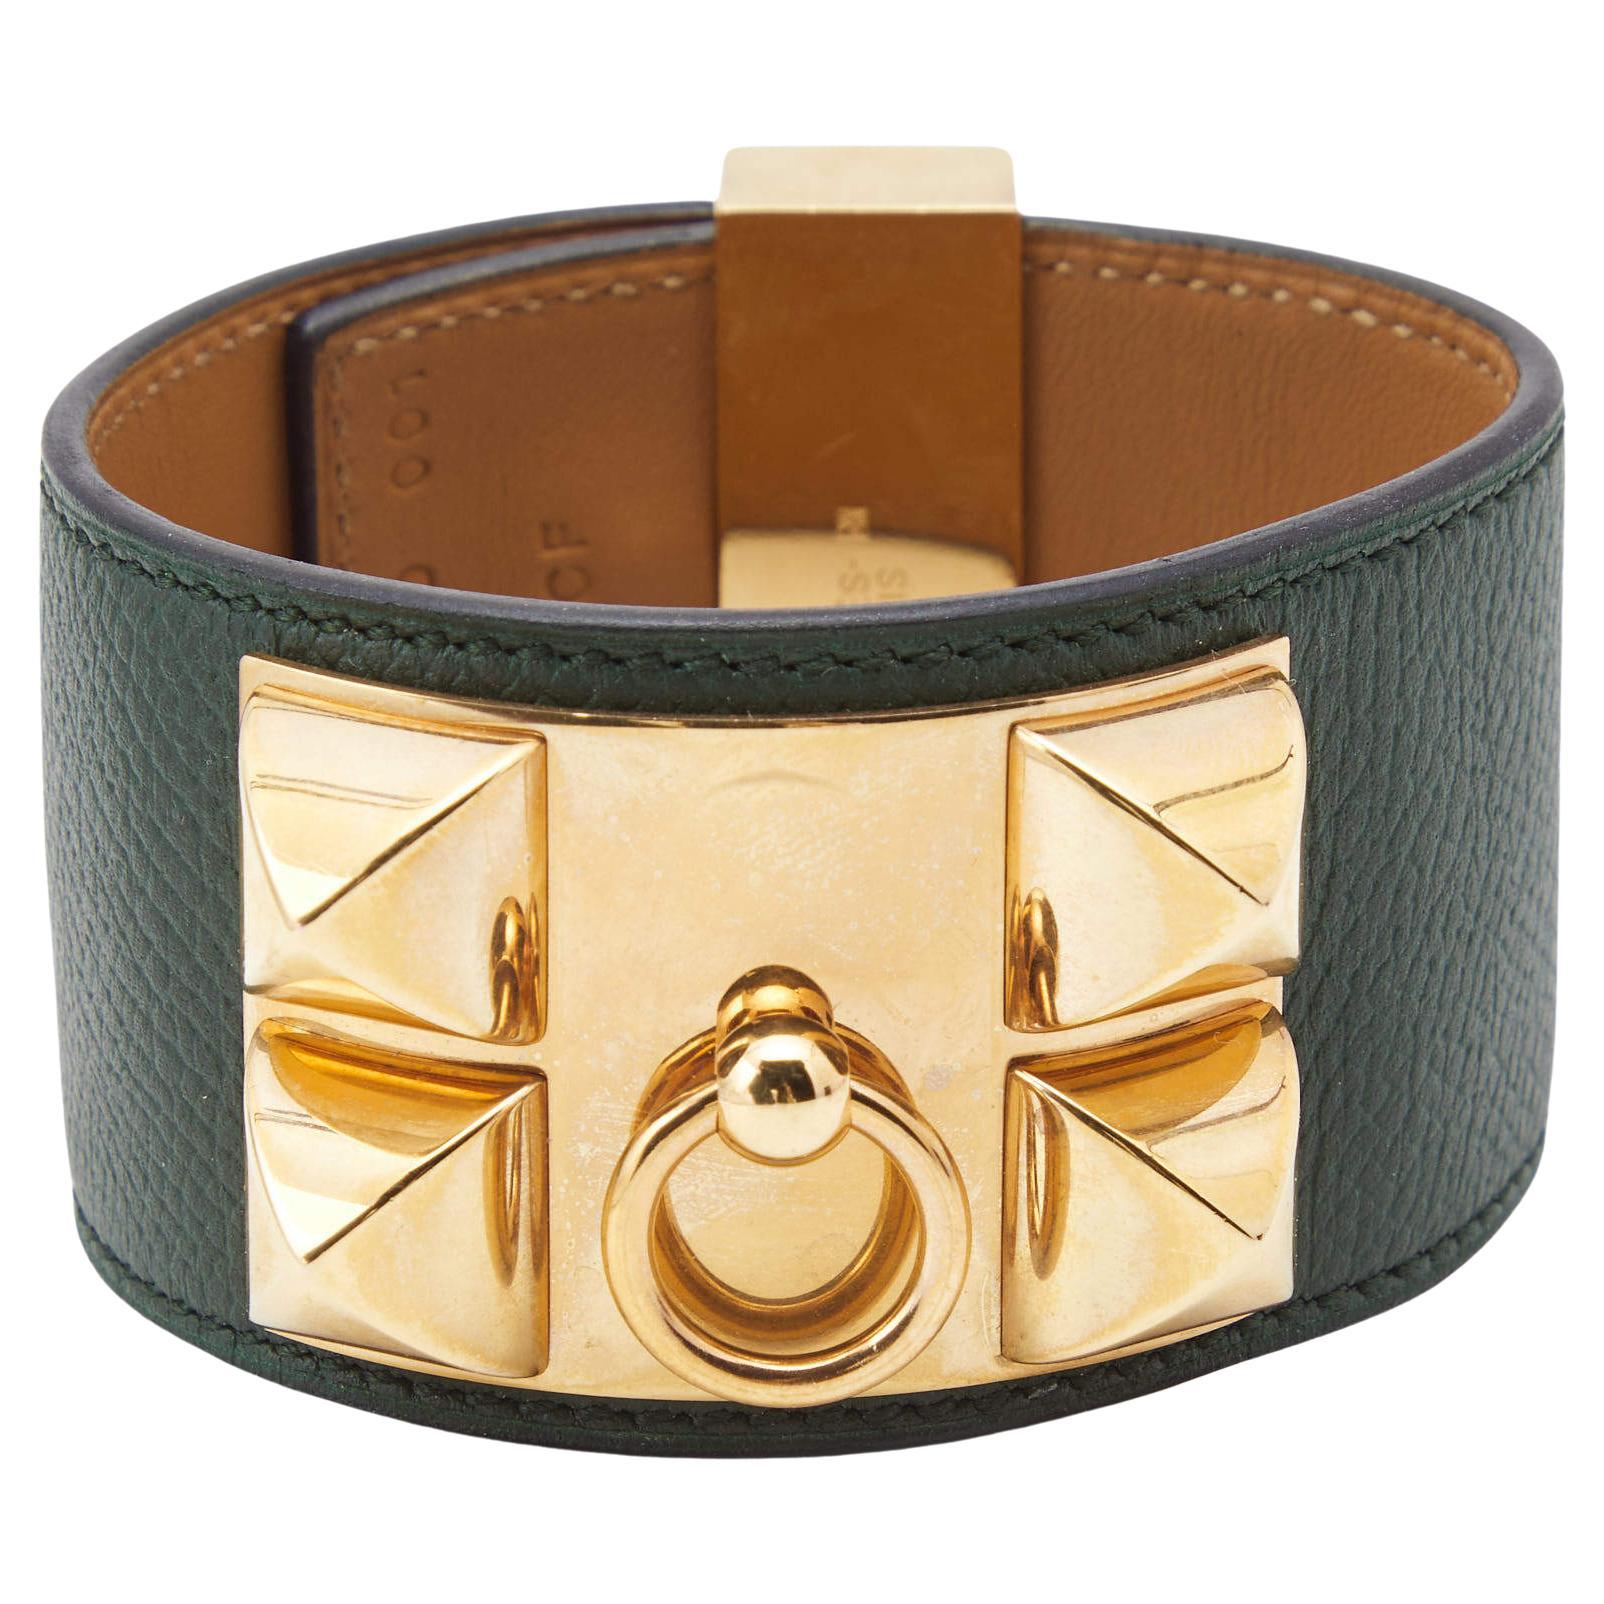 Hermes Collier de Chien Leather Gold Plated Bracelet L For Sale